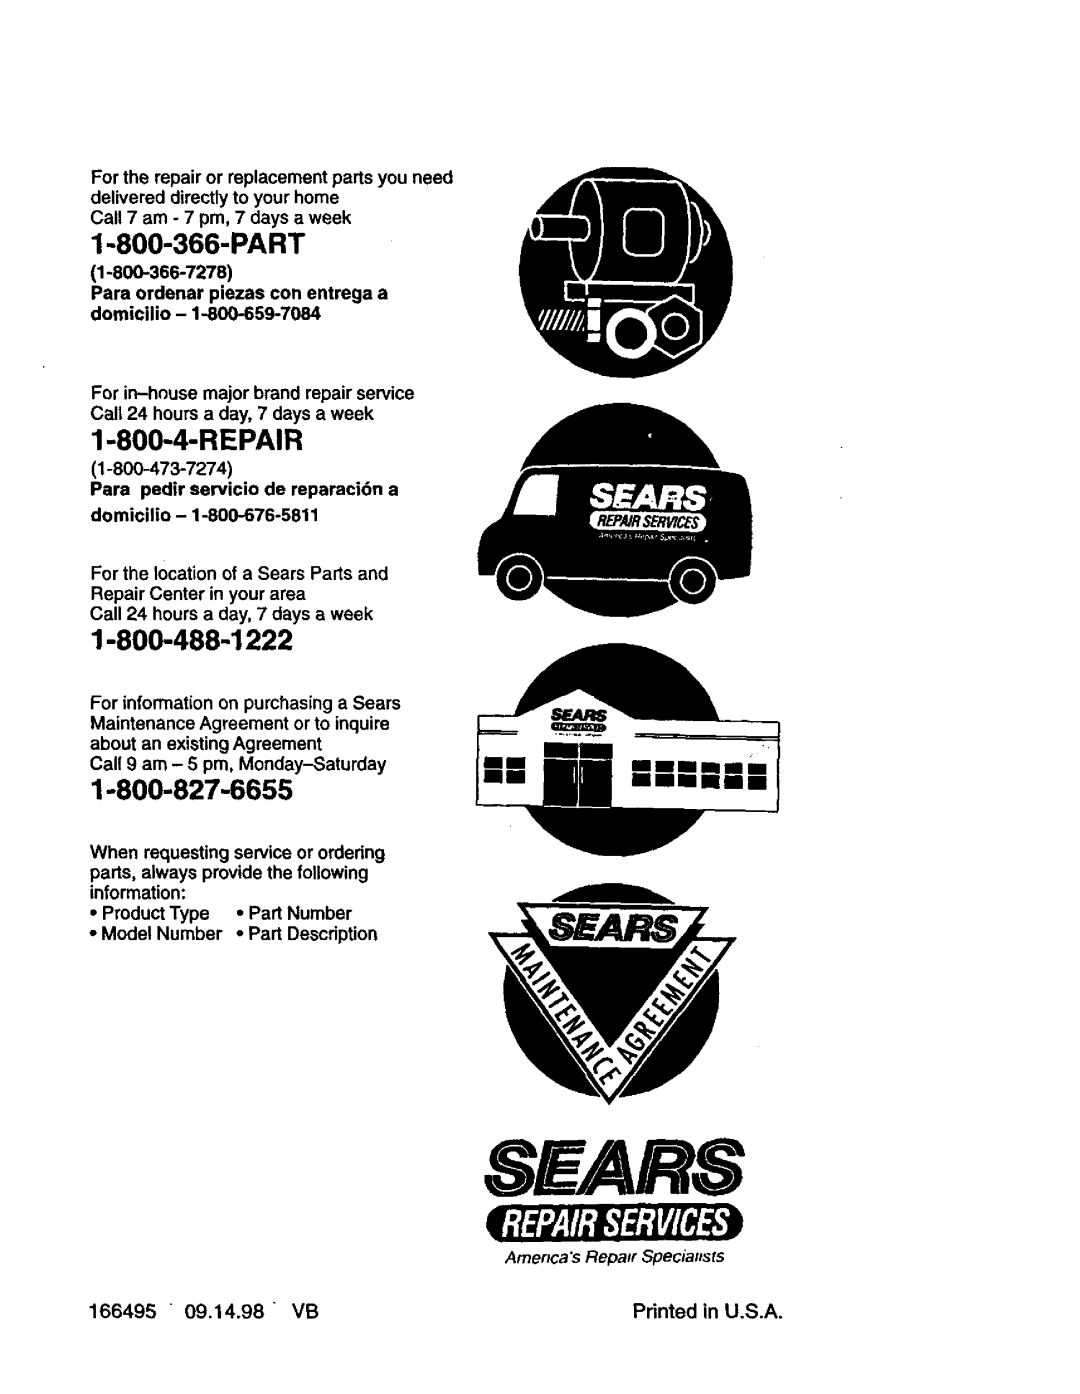 Craftsman 917.377542 owner manual Part, 166495, Sears, Repair, mmmmm, Amencas Repaor Specialists 